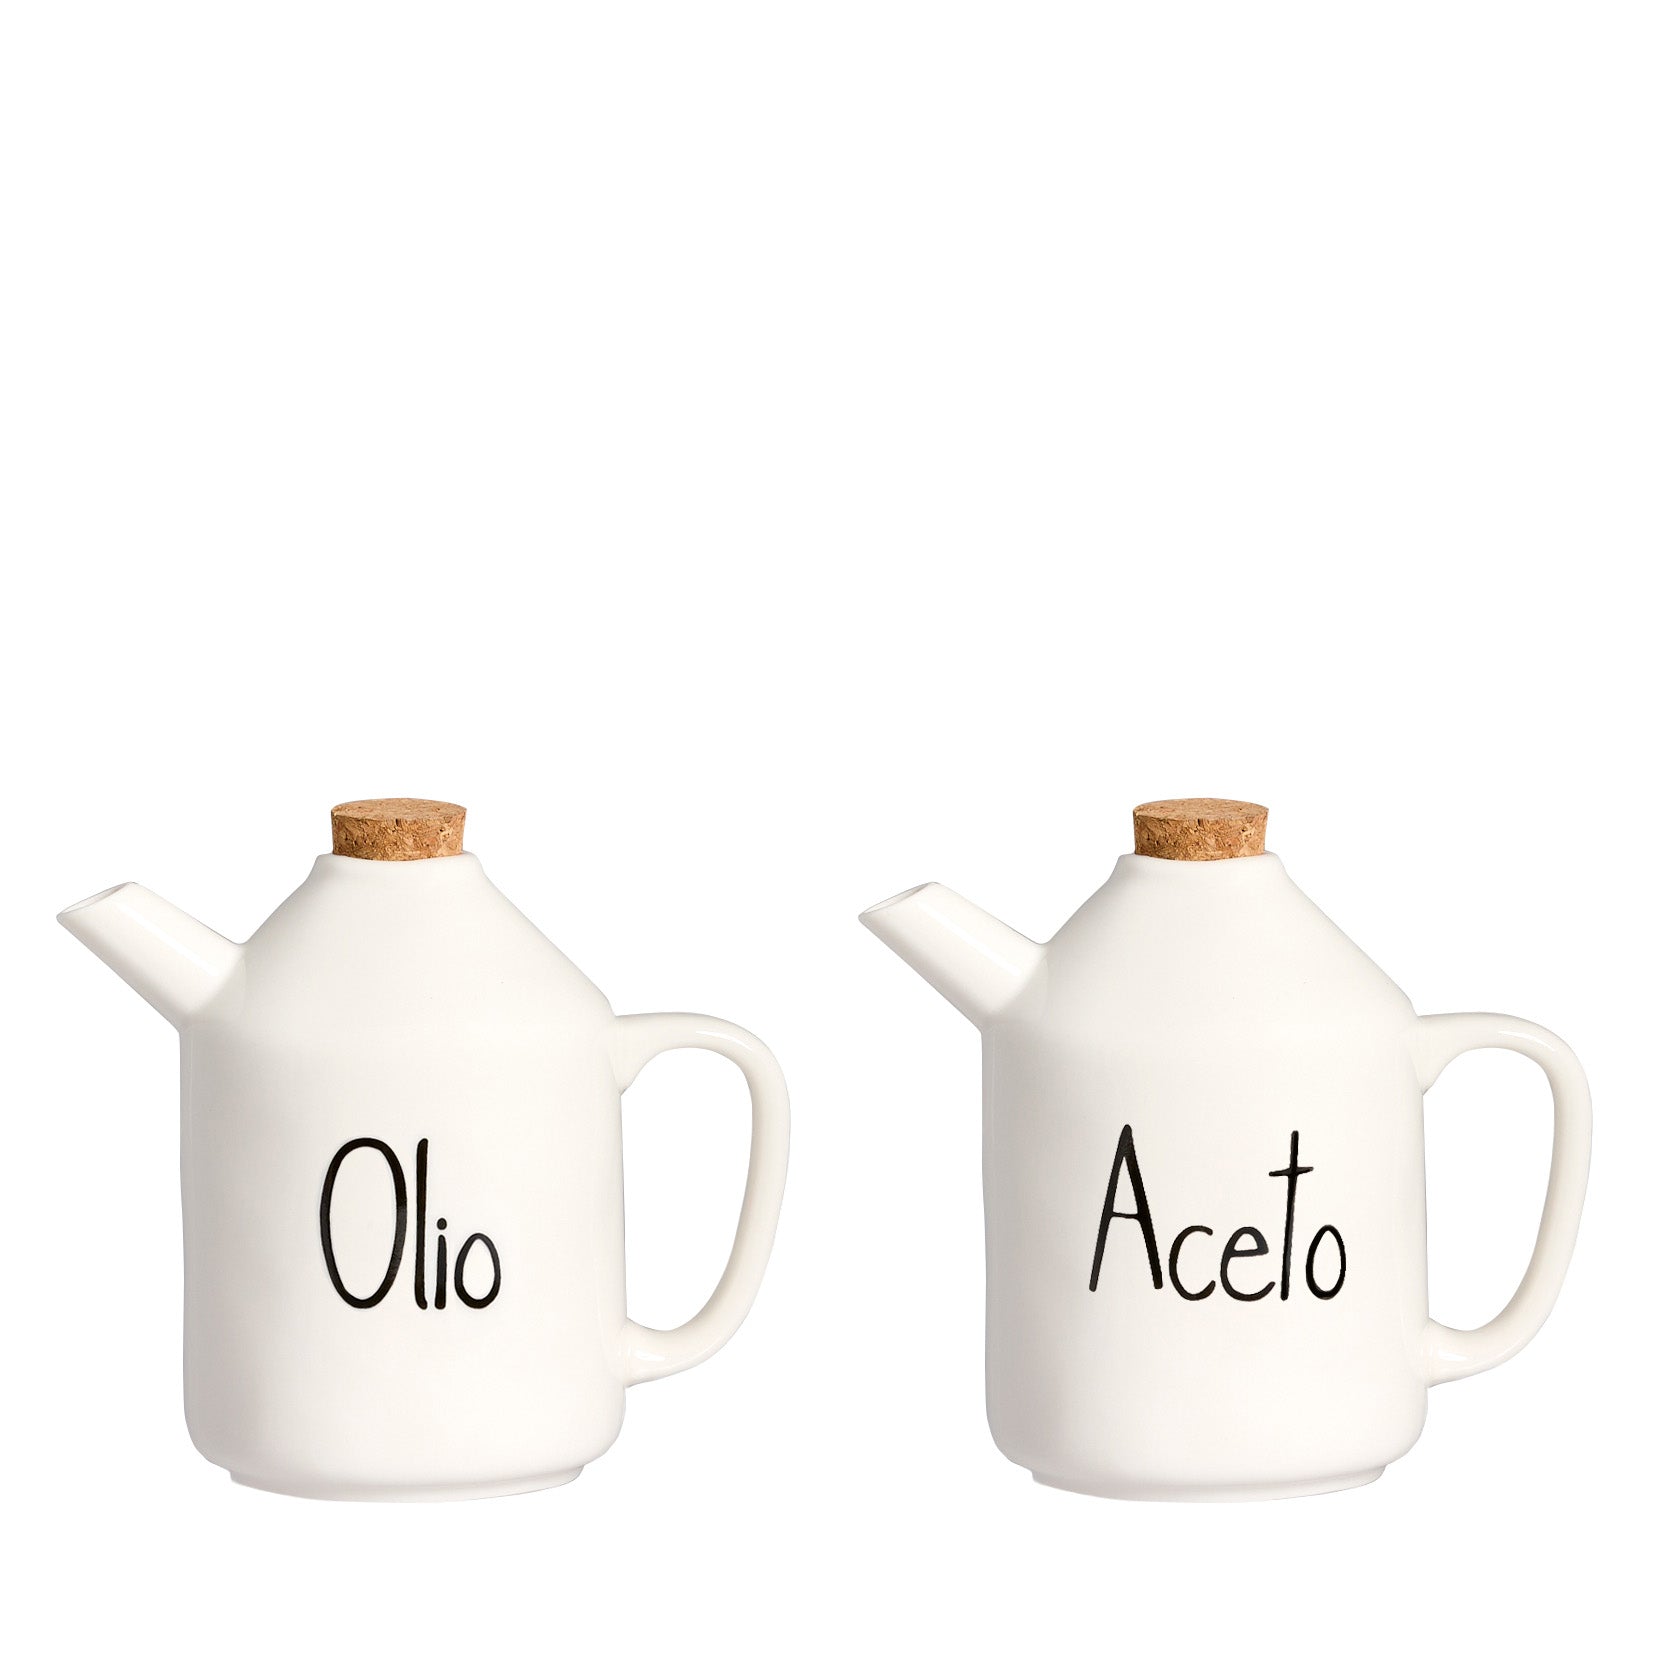 Set 2 oil bottles - 2x250ml vinegar